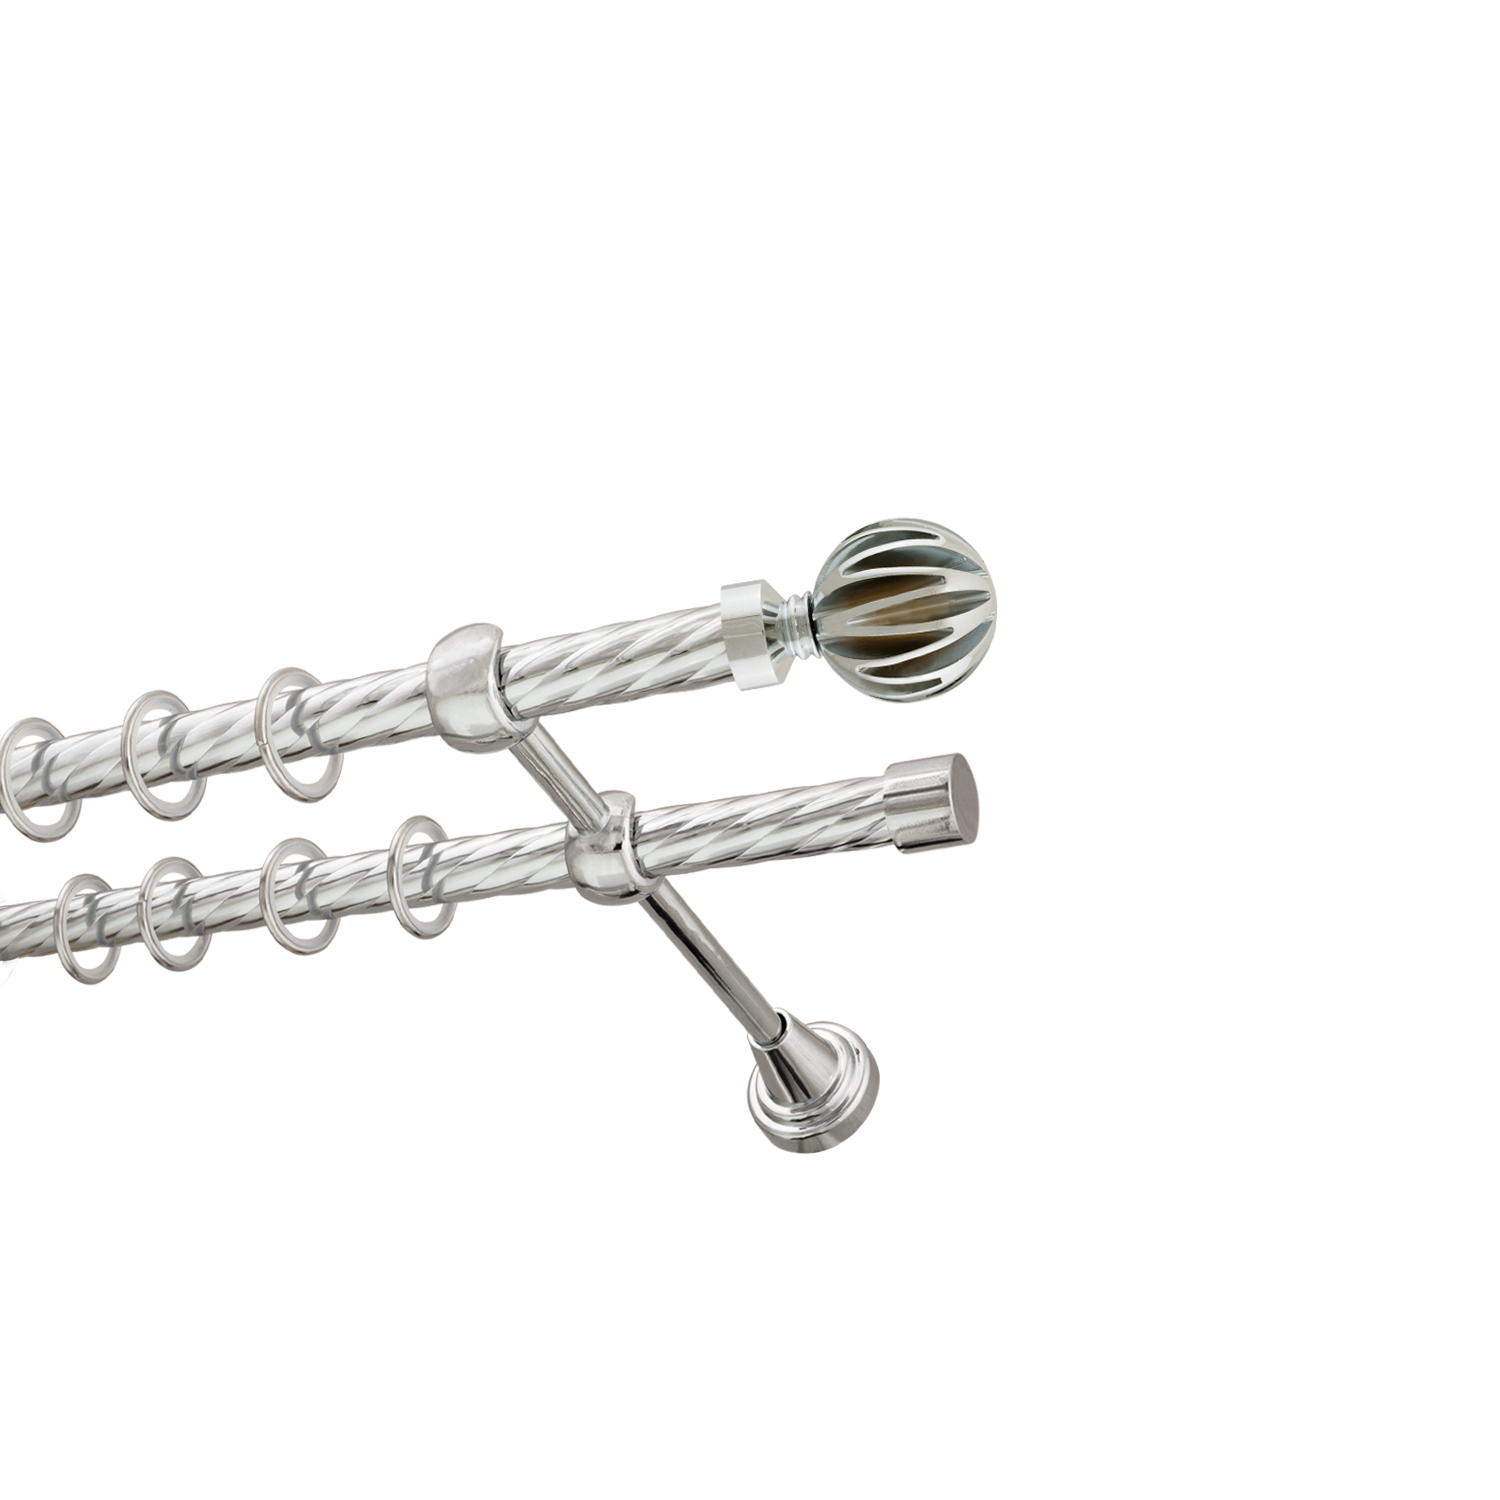 Металлический карниз для штор Шафран, двухрядный 16/16 мм, серебро, витая штанга, длина 300 см